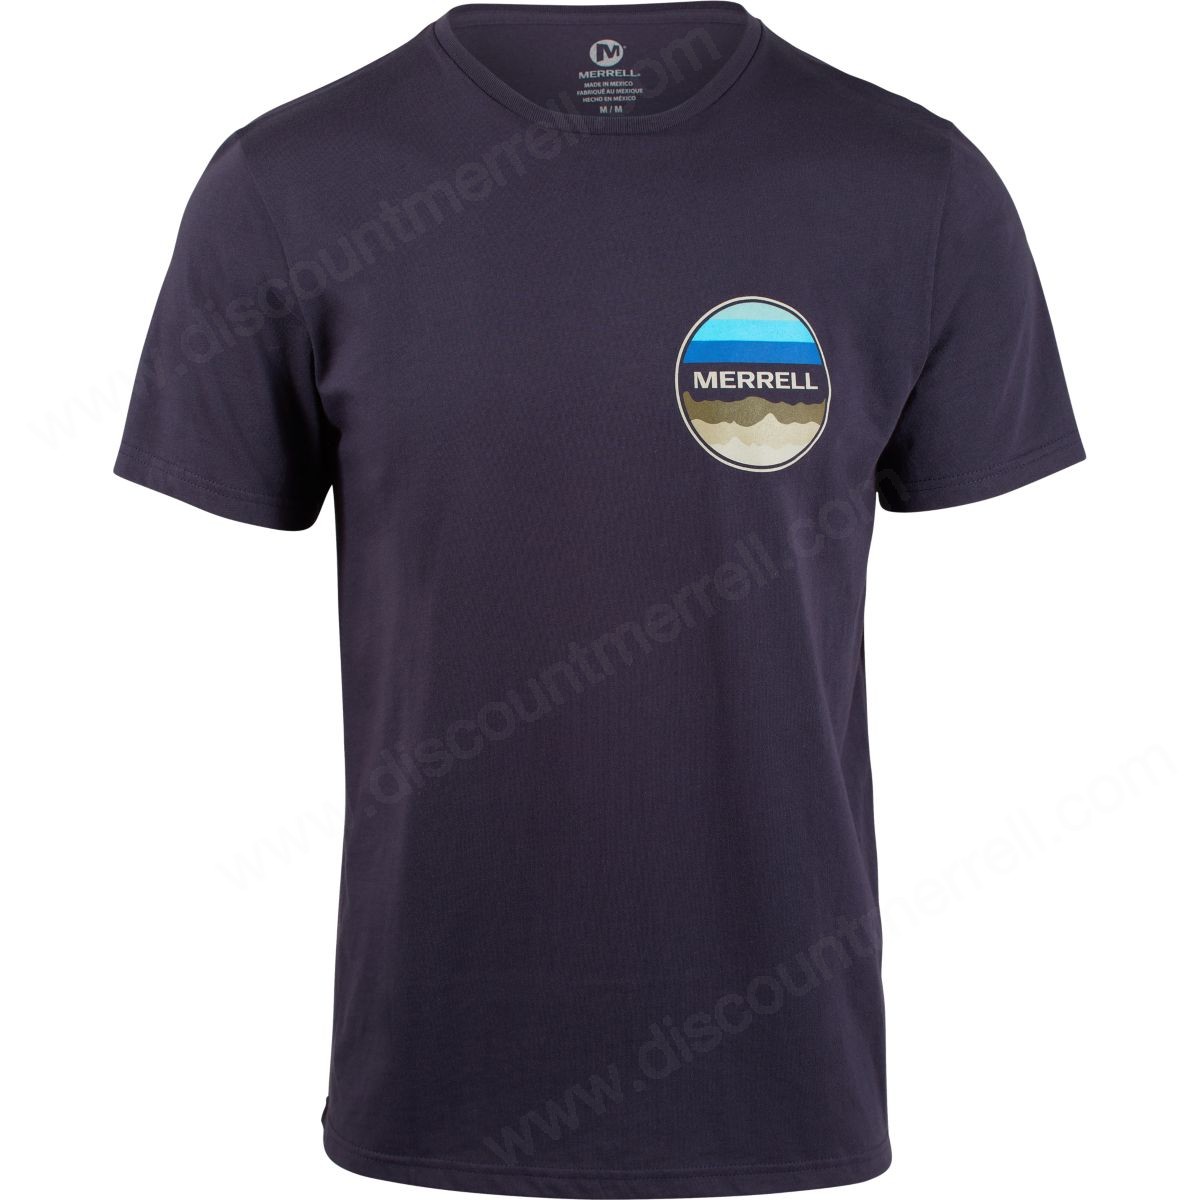 Merrell Mens's Vista Graphic Tshirt Navy - -0